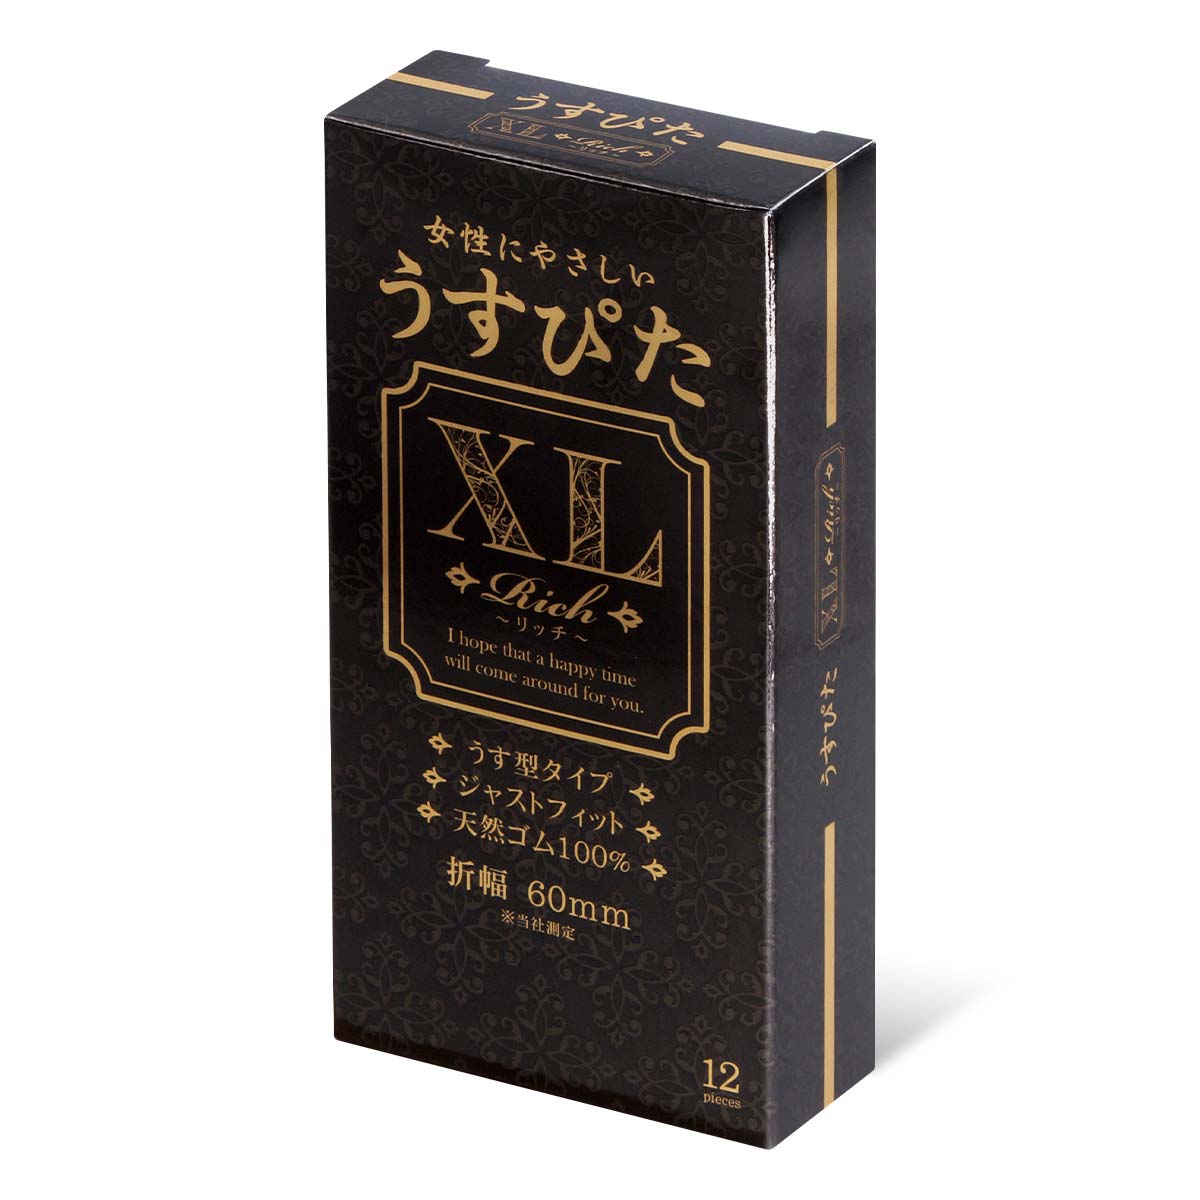 Usu-Pita XL 60mm 12's Pack Latex Condom-thumb_1